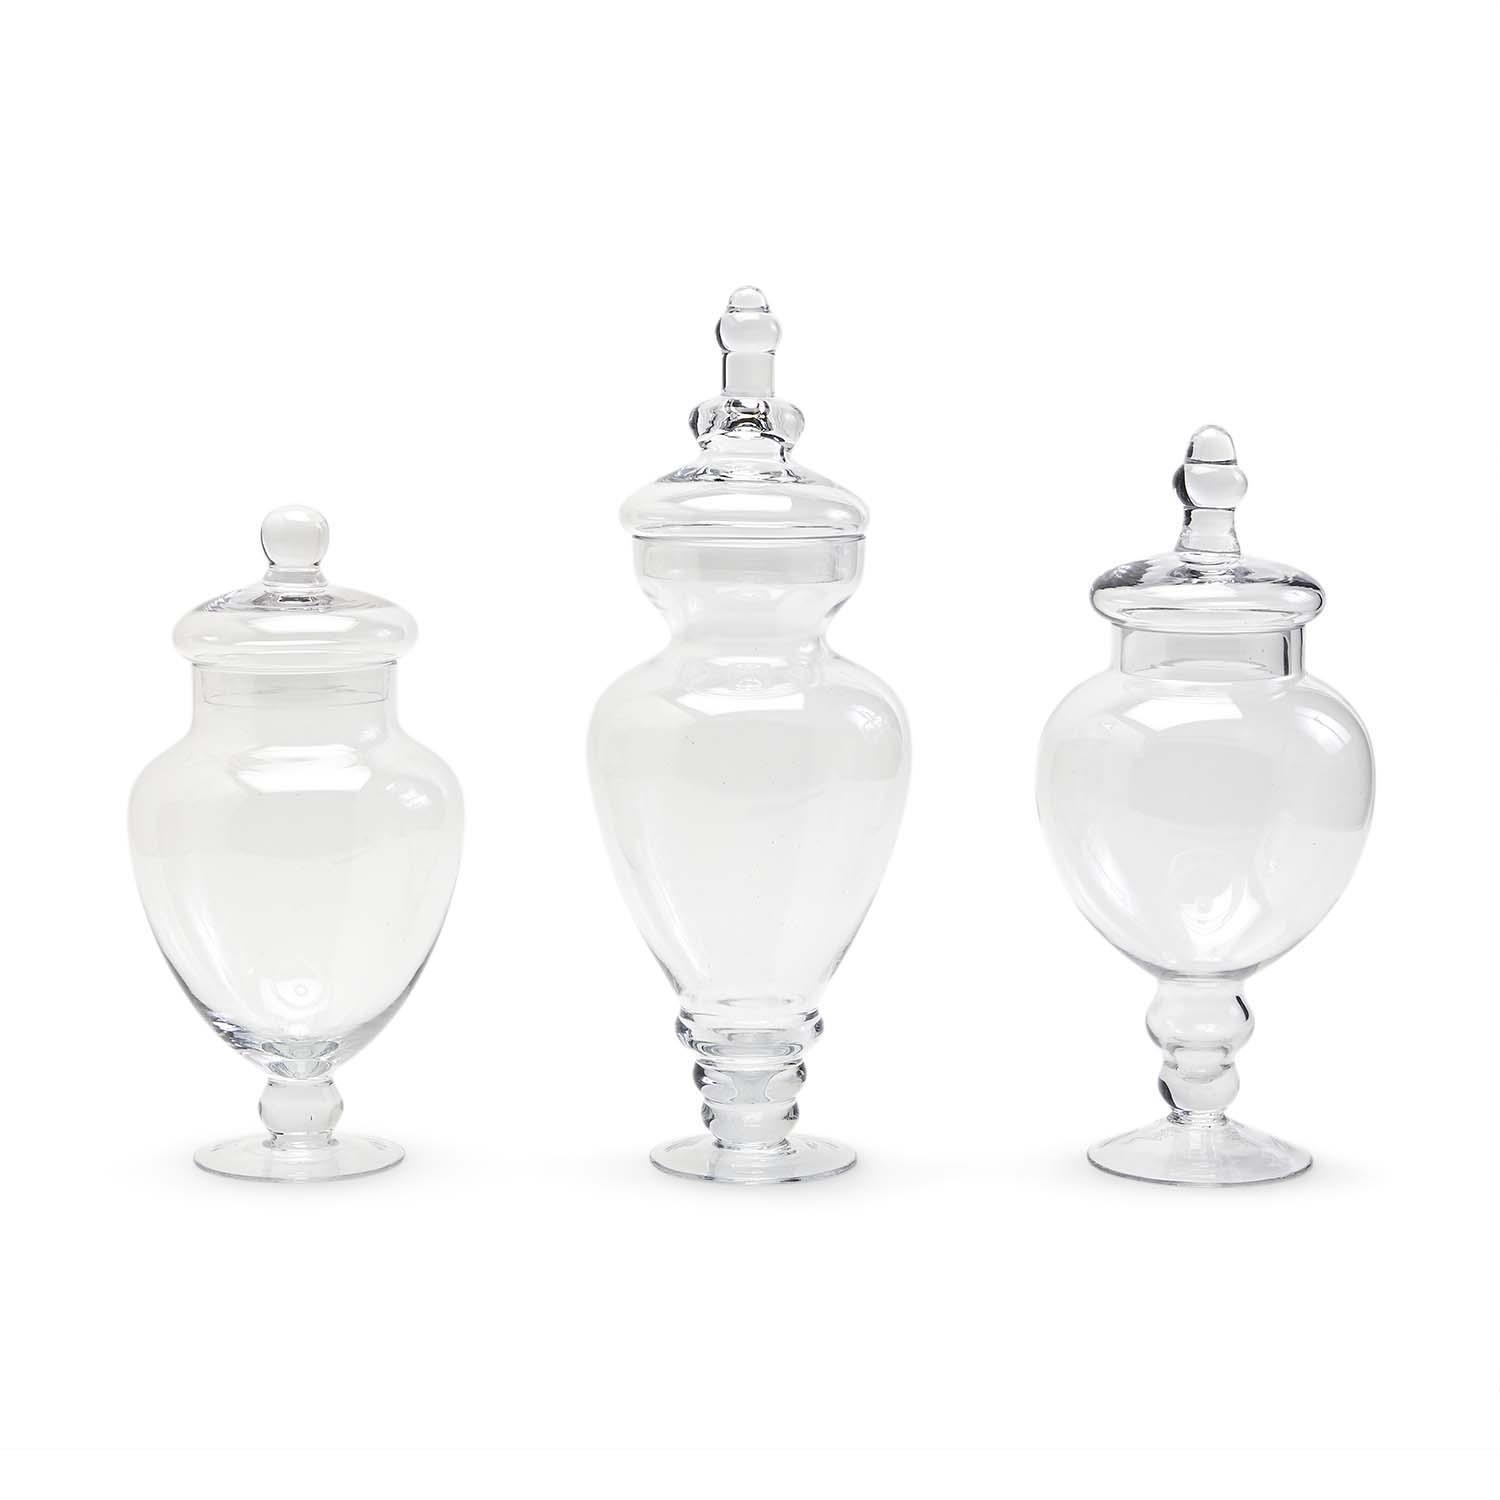 Two's Company Glass Jar 3 Sizes